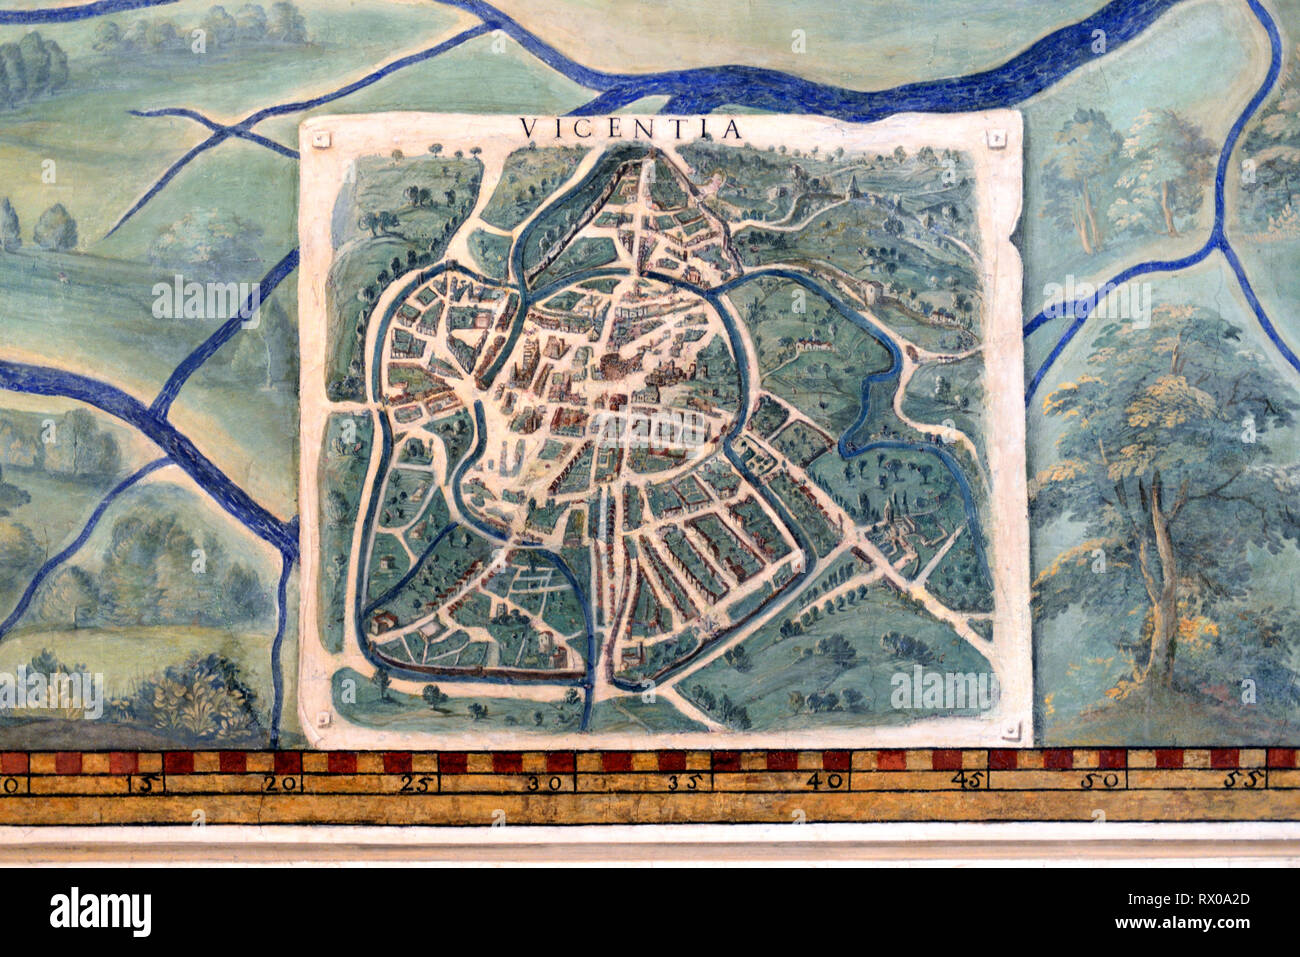 Stadt Plan oder alte Karte von Vicenza, Italien. Fresko an der Wand oder an der Malerei in der Galerie von Karten (1580-83) auf Zeichnungen von Ignazio Danti Vatikanische Museen basierend Stockfoto